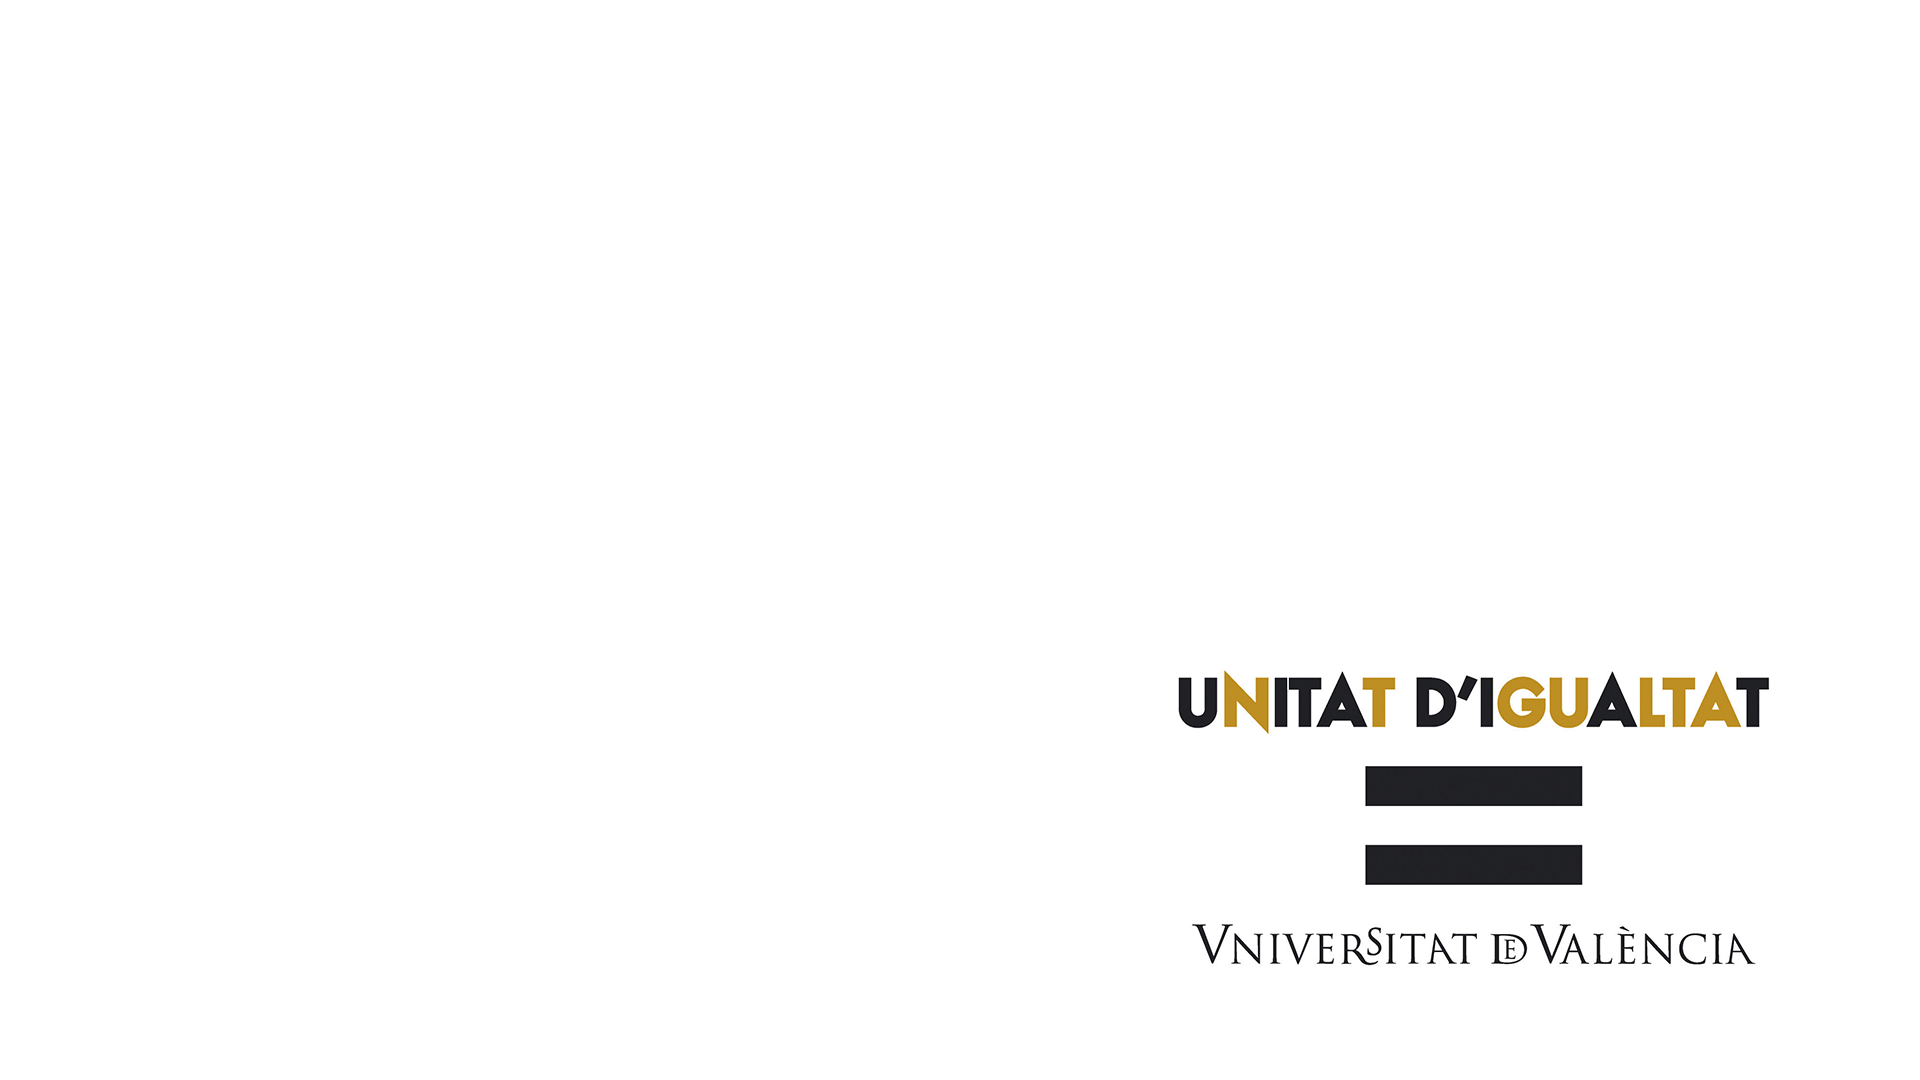 Bienvenida a la Igualdad en la Universitat de València